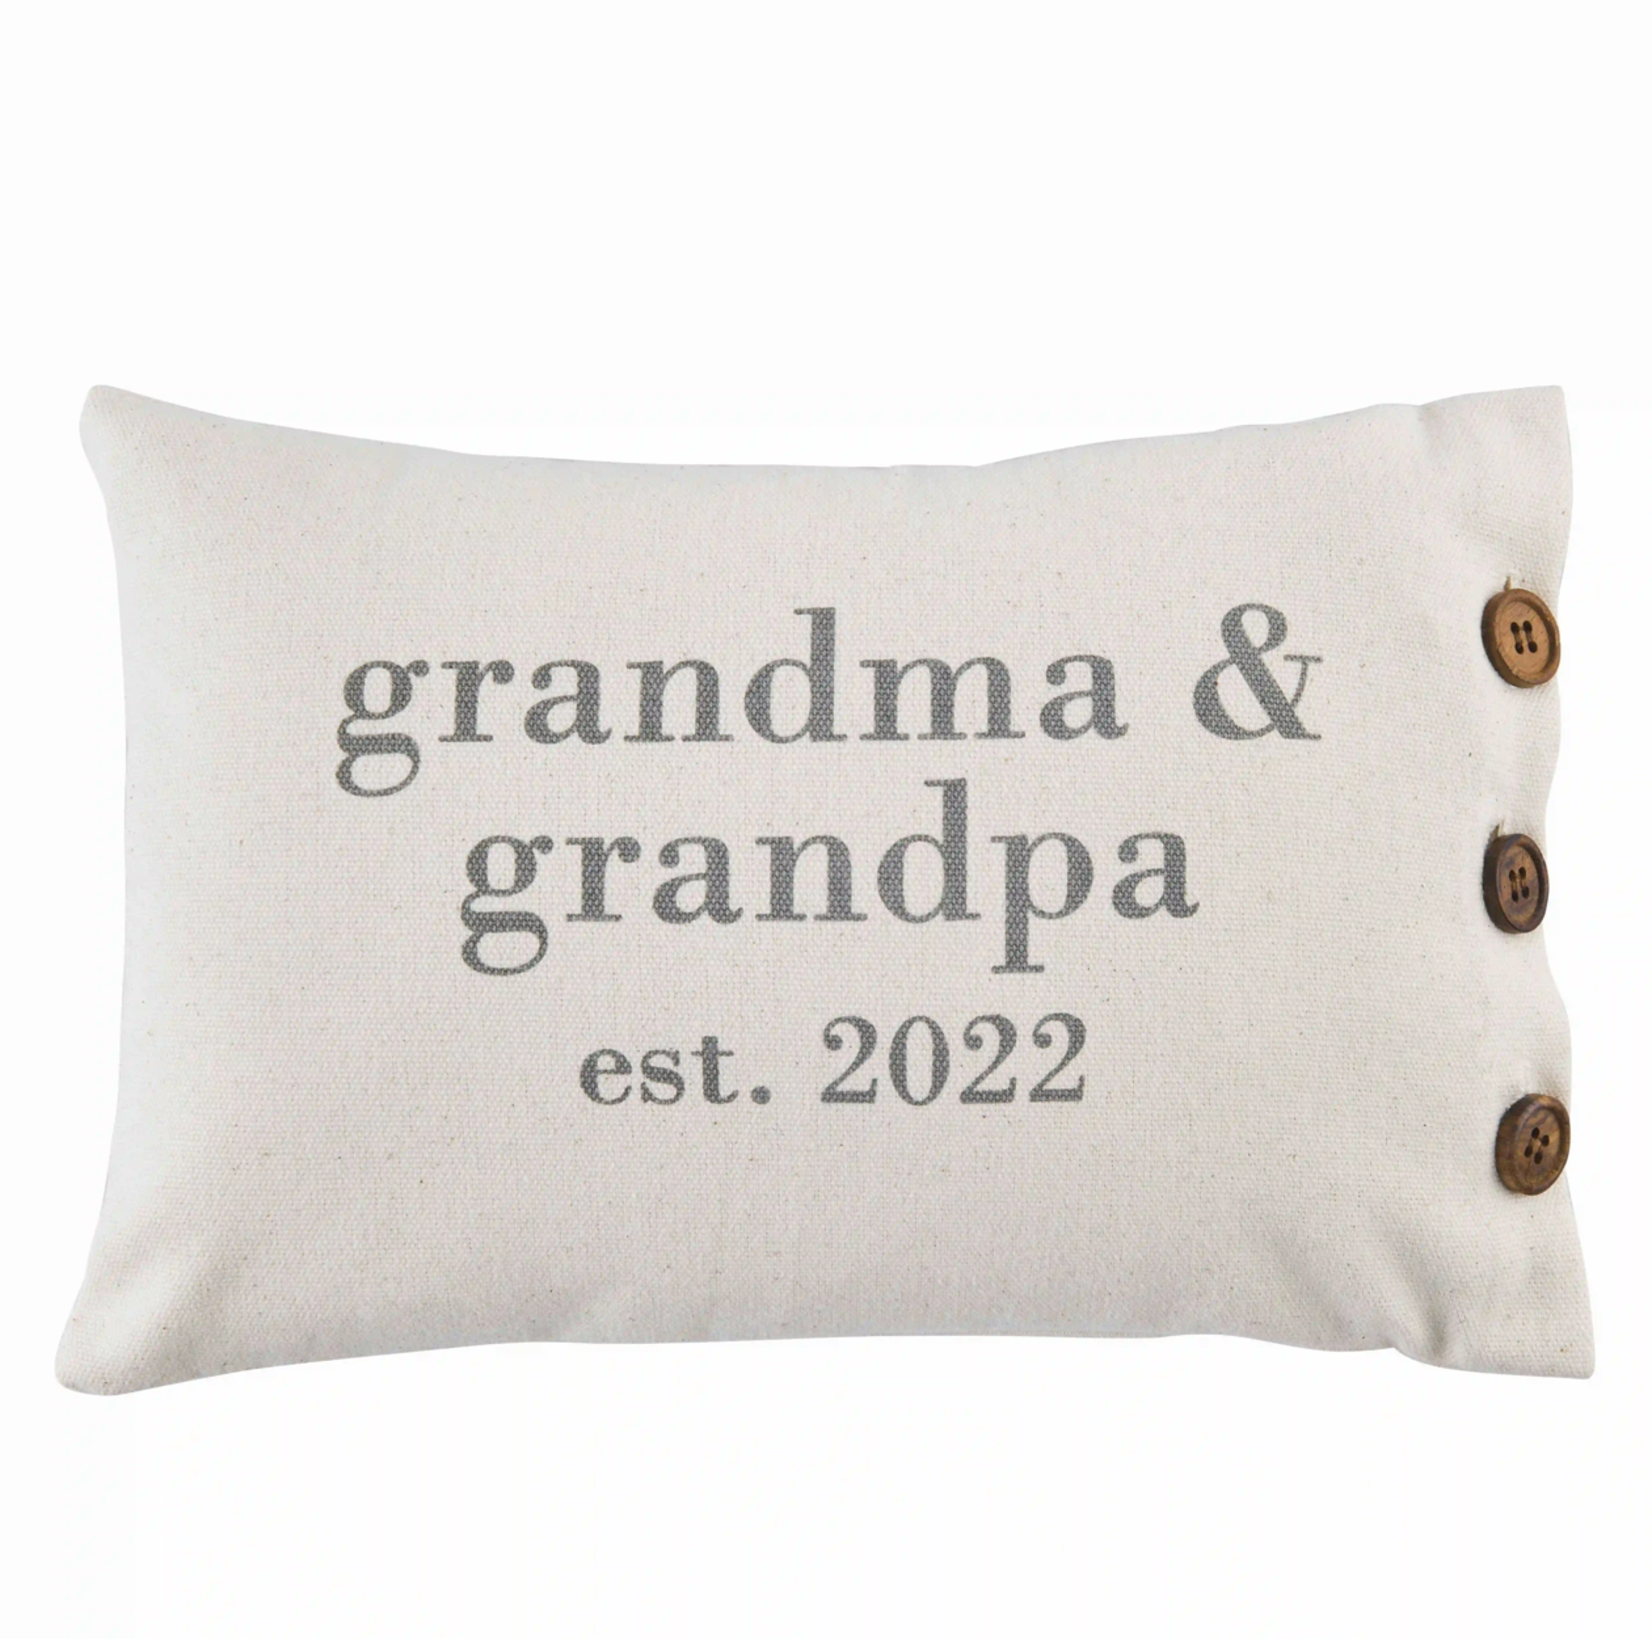 Grandparent Est. 2022 Throw Pillow